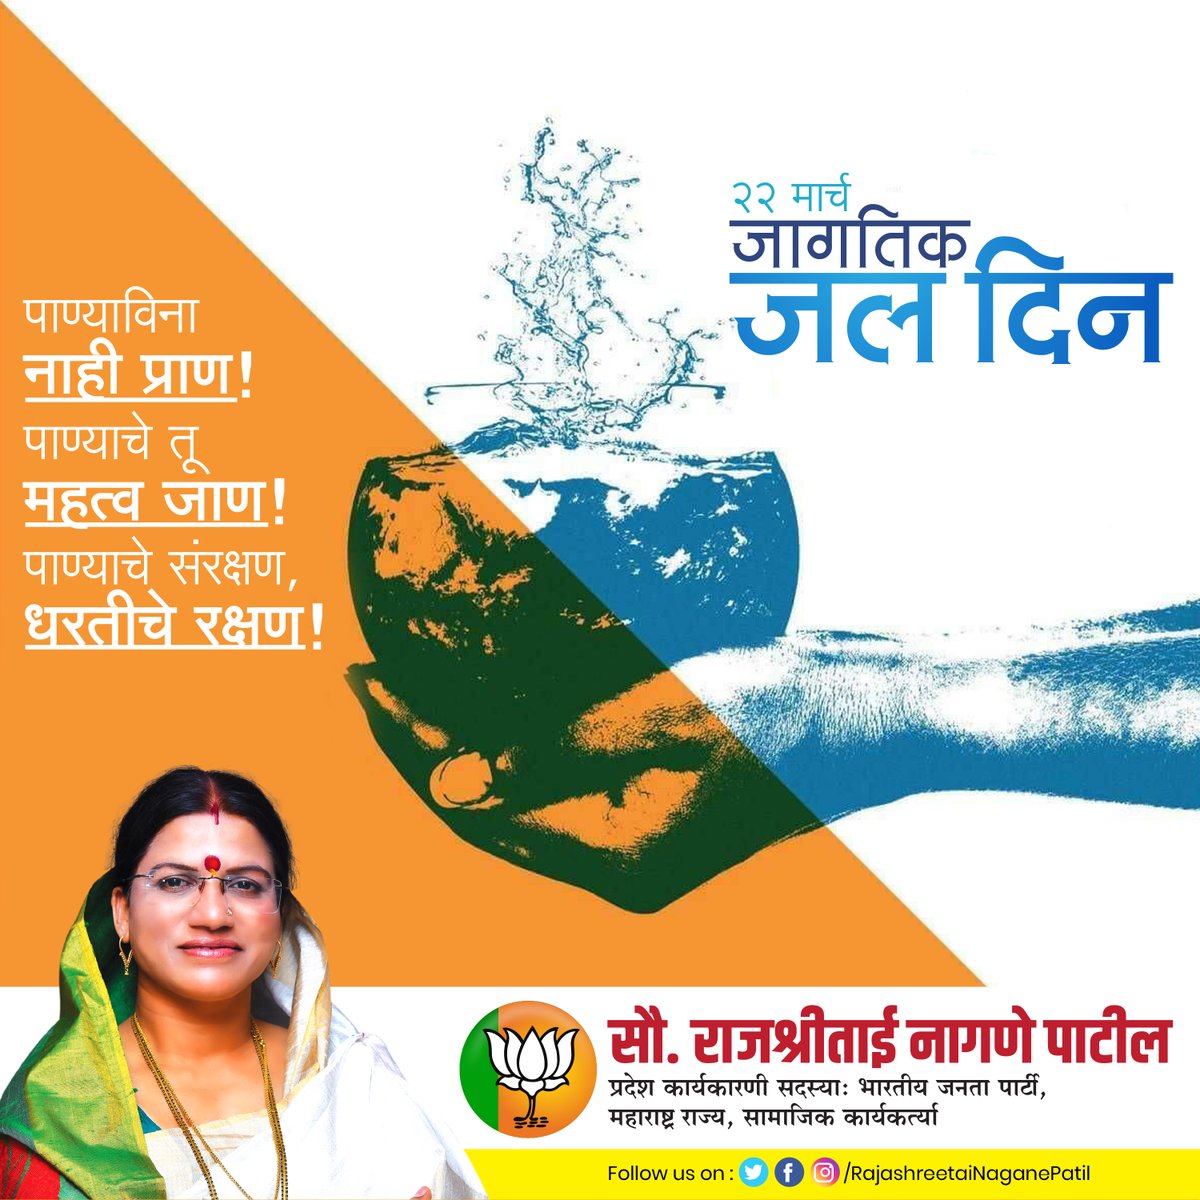 'जागतिक जल दिन'
नागरिकहो, आज जागतिक जल दिनाचे औचित्य साधून आपण सर्वांनी पाण्याचा अपव्यय टाळण्याचा तसेच पाणी वाचवण्याचा संकल्प करूया..

#WorldWaterDay #SaveWater #WaterDay #जागतिक_जल_दिन 
#RajashreeTaiNaganePatil #SocialWorker #BJP